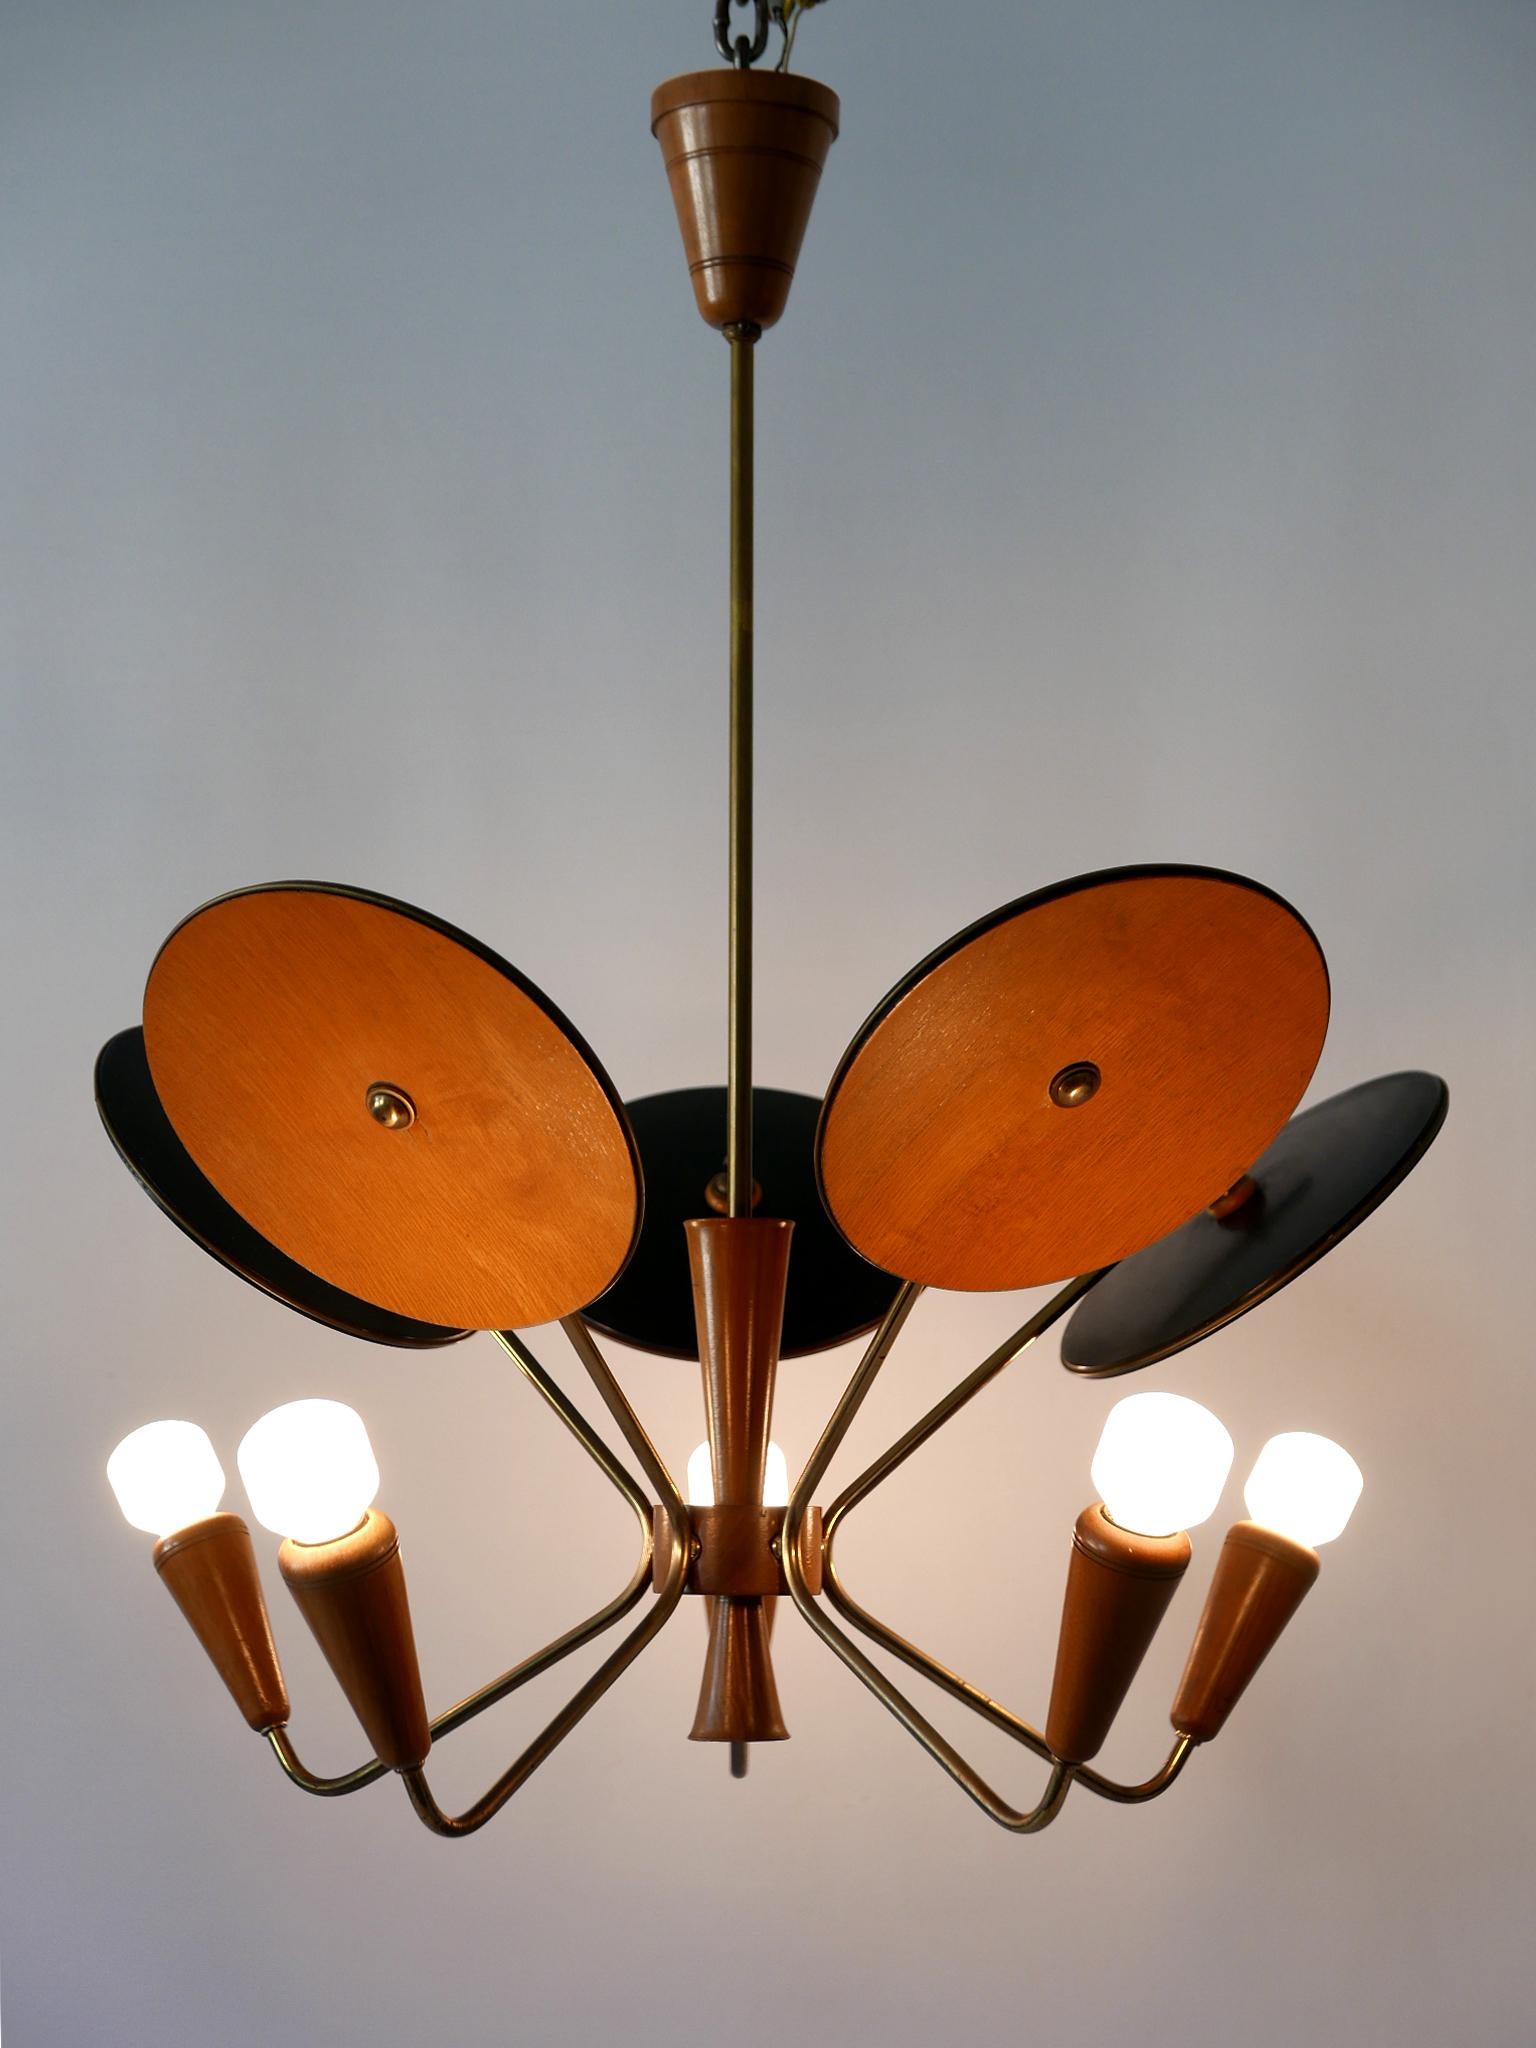 Lustre ou lampe à suspension en forme de spoutnik à cinq bras, extrêmement rare et très décoratif, de style moderne du milieu du siècle. Conçu et fabriqué probablement en Allemagne, dans les années 1950.

Réalisée en bois et en laiton, la lampe